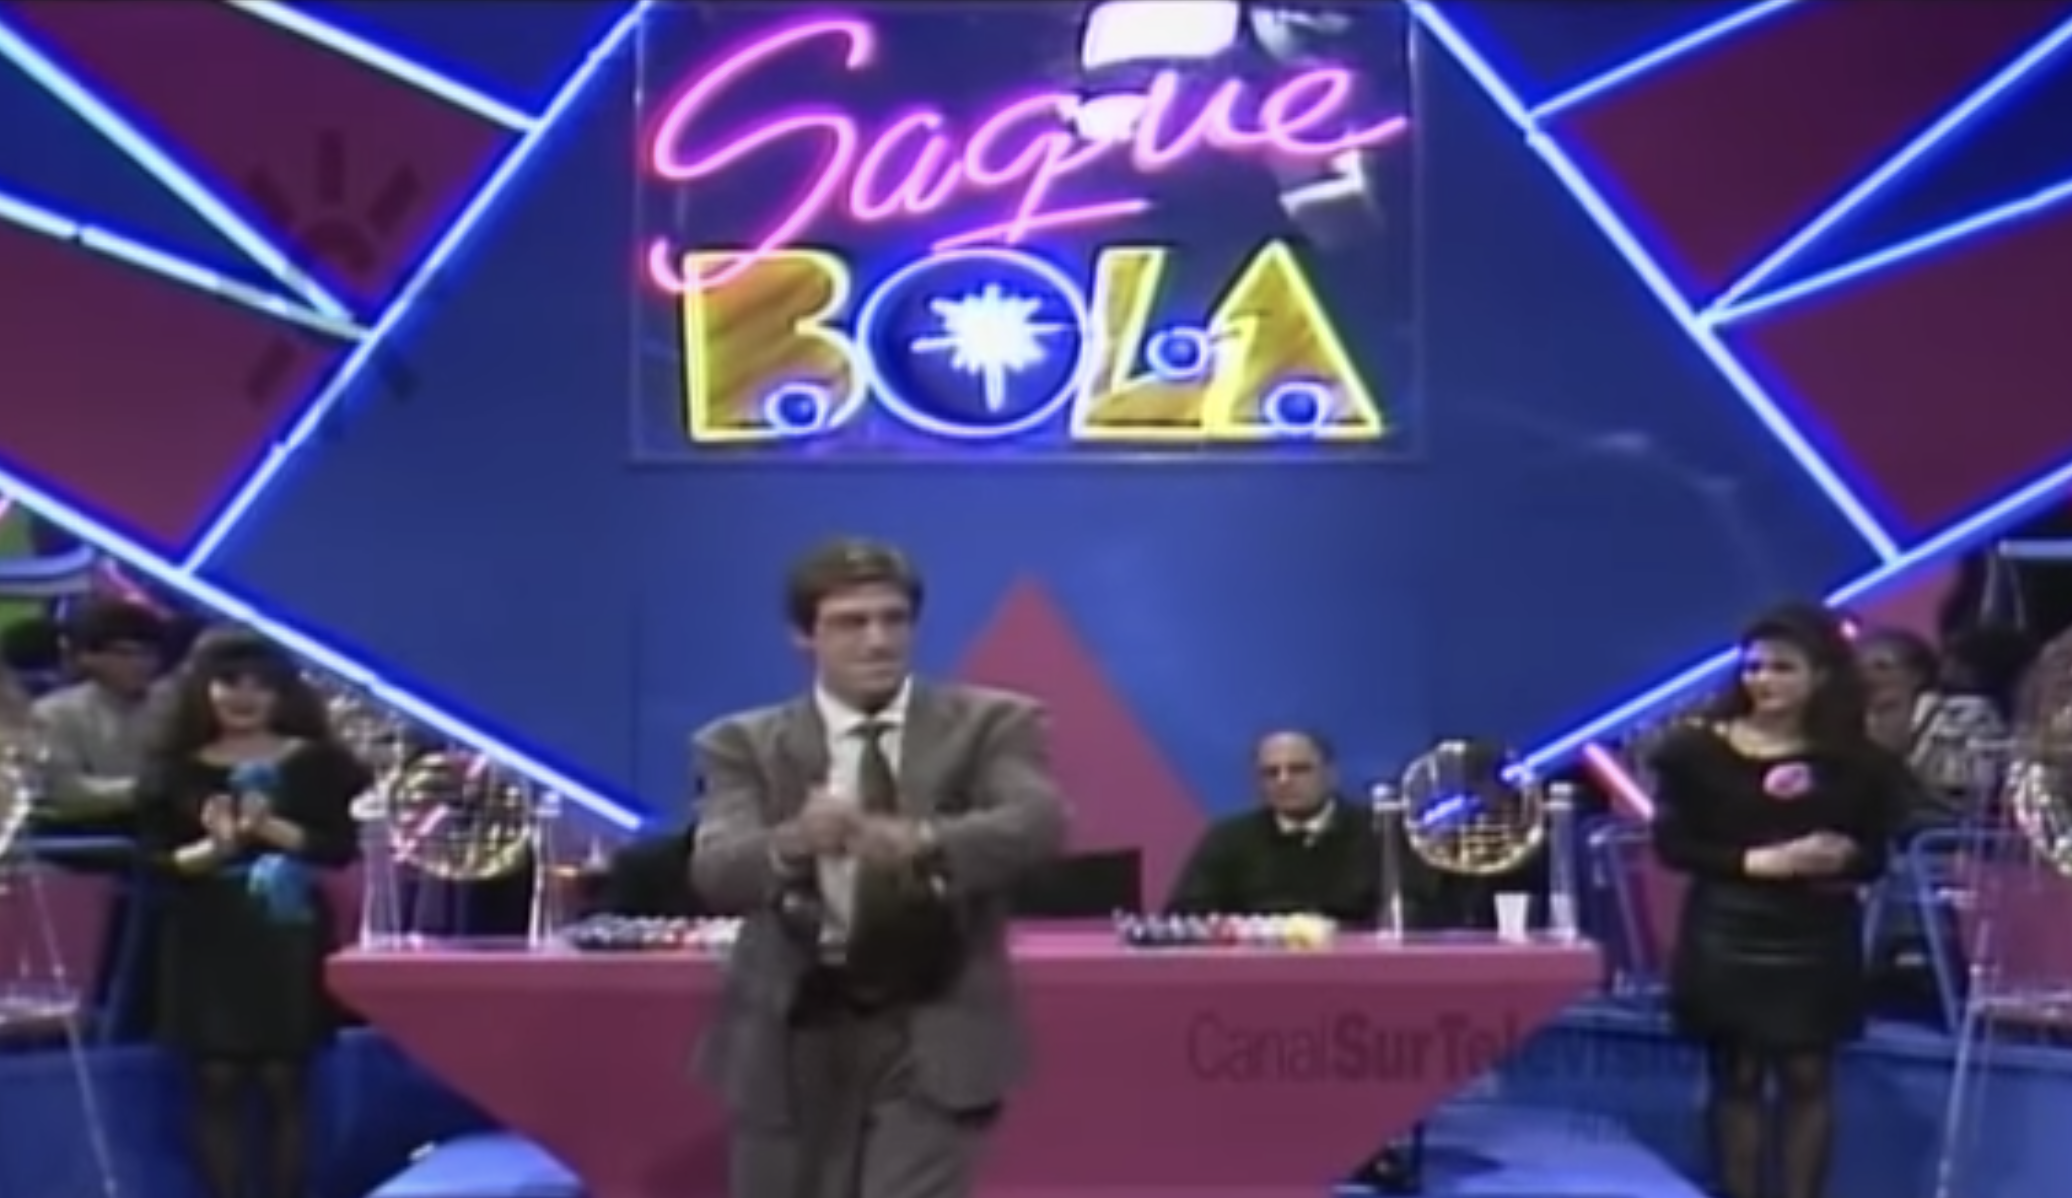 Imagen del primer programa de 'Saque bola', presentado por Emilio Aragón y que Canal Sur empezó a emitir a finales de los 80.